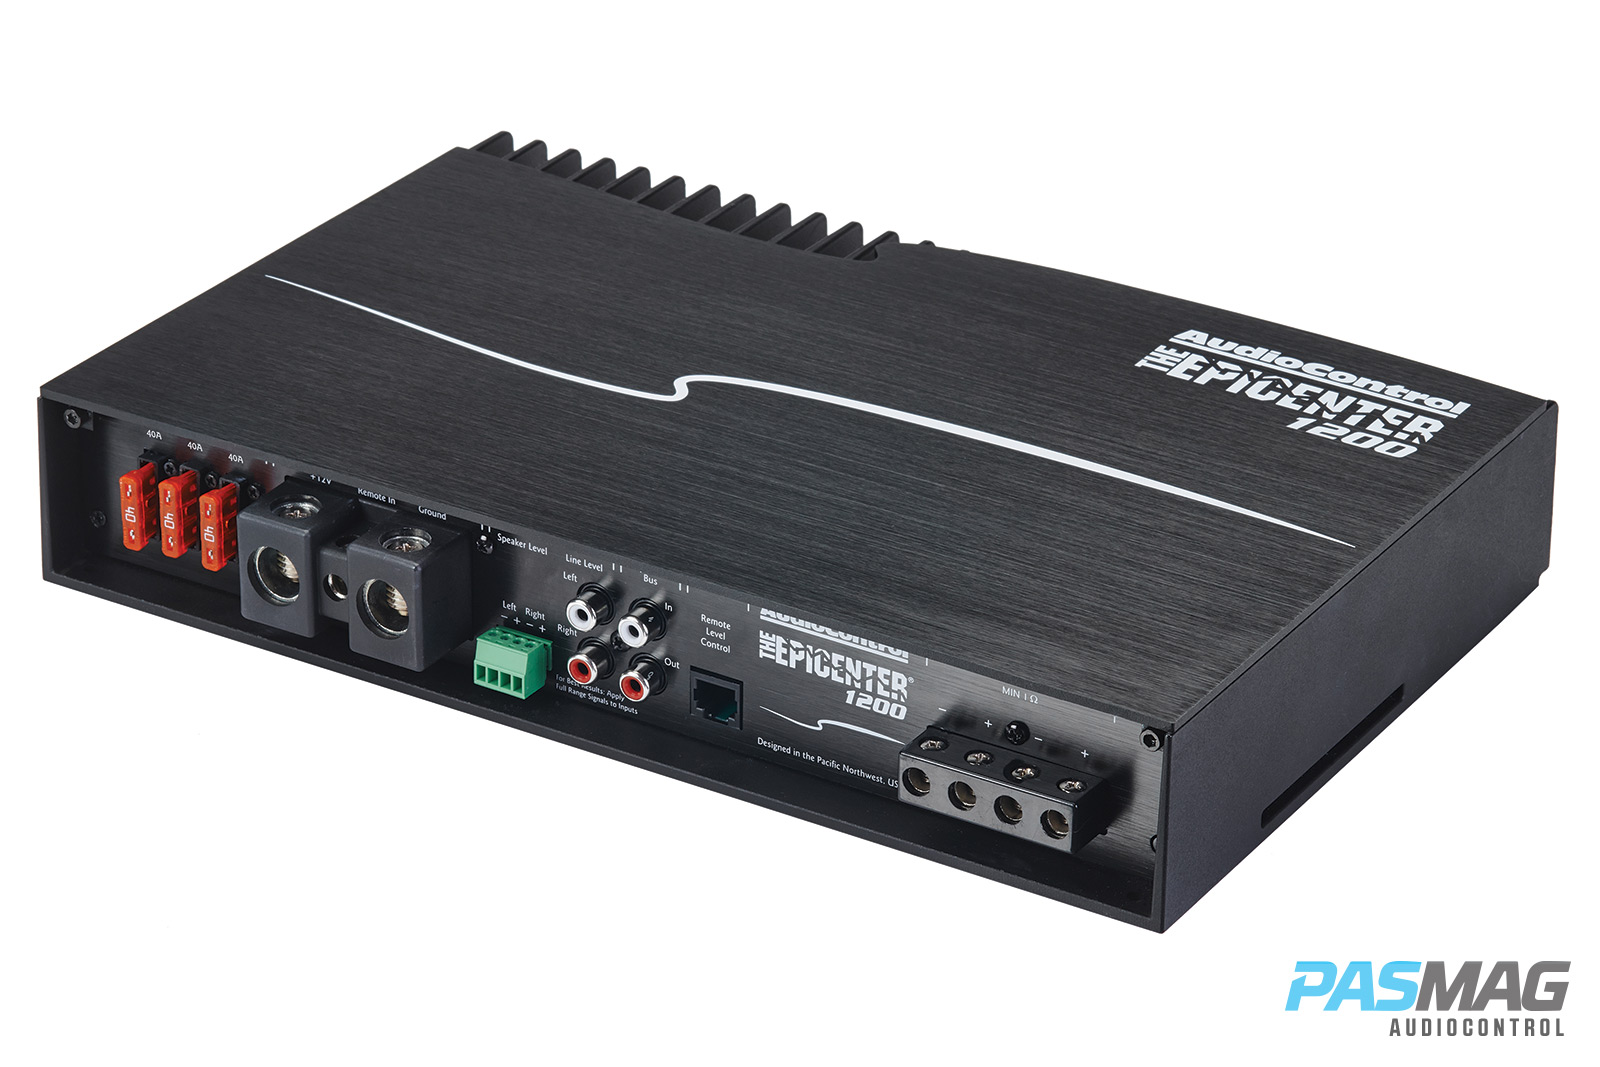 AudioControl Epicenter 1200 PASMAG Amplifier Review 1